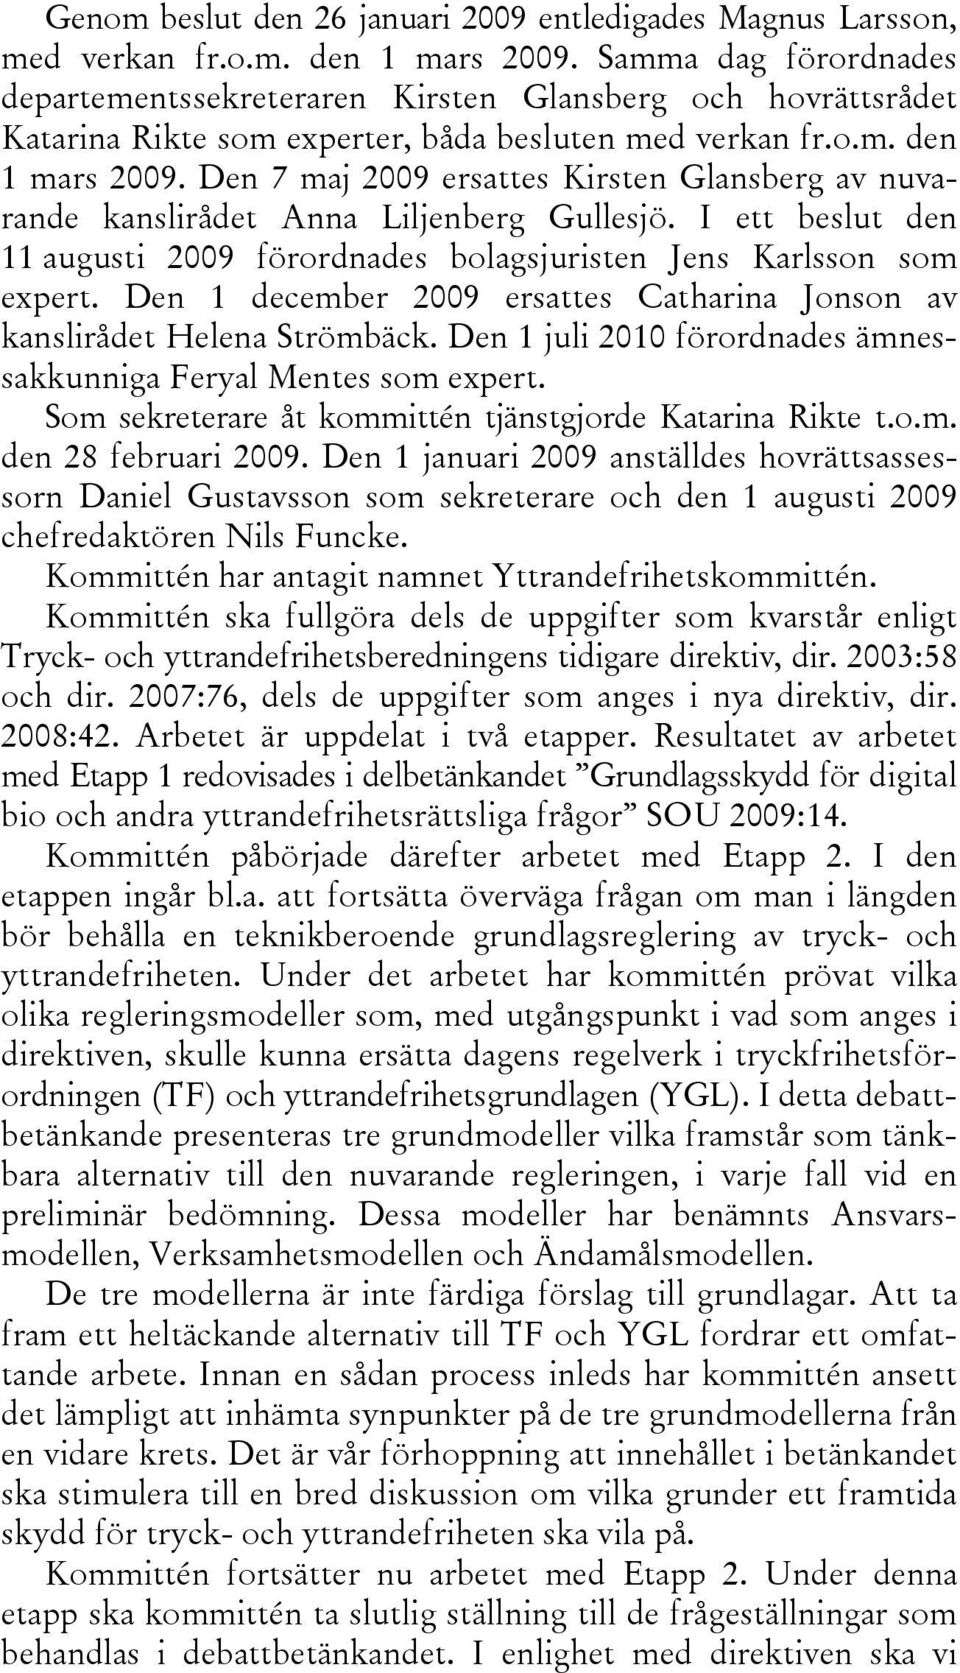 Den 7 maj 2009 ersattes Kirsten Glansberg av nuvarande kanslirådet Anna Liljenberg Gullesjö. I ett beslut den 11 augusti 2009 förordnades bolagsjuristen Jens Karlsson som expert.